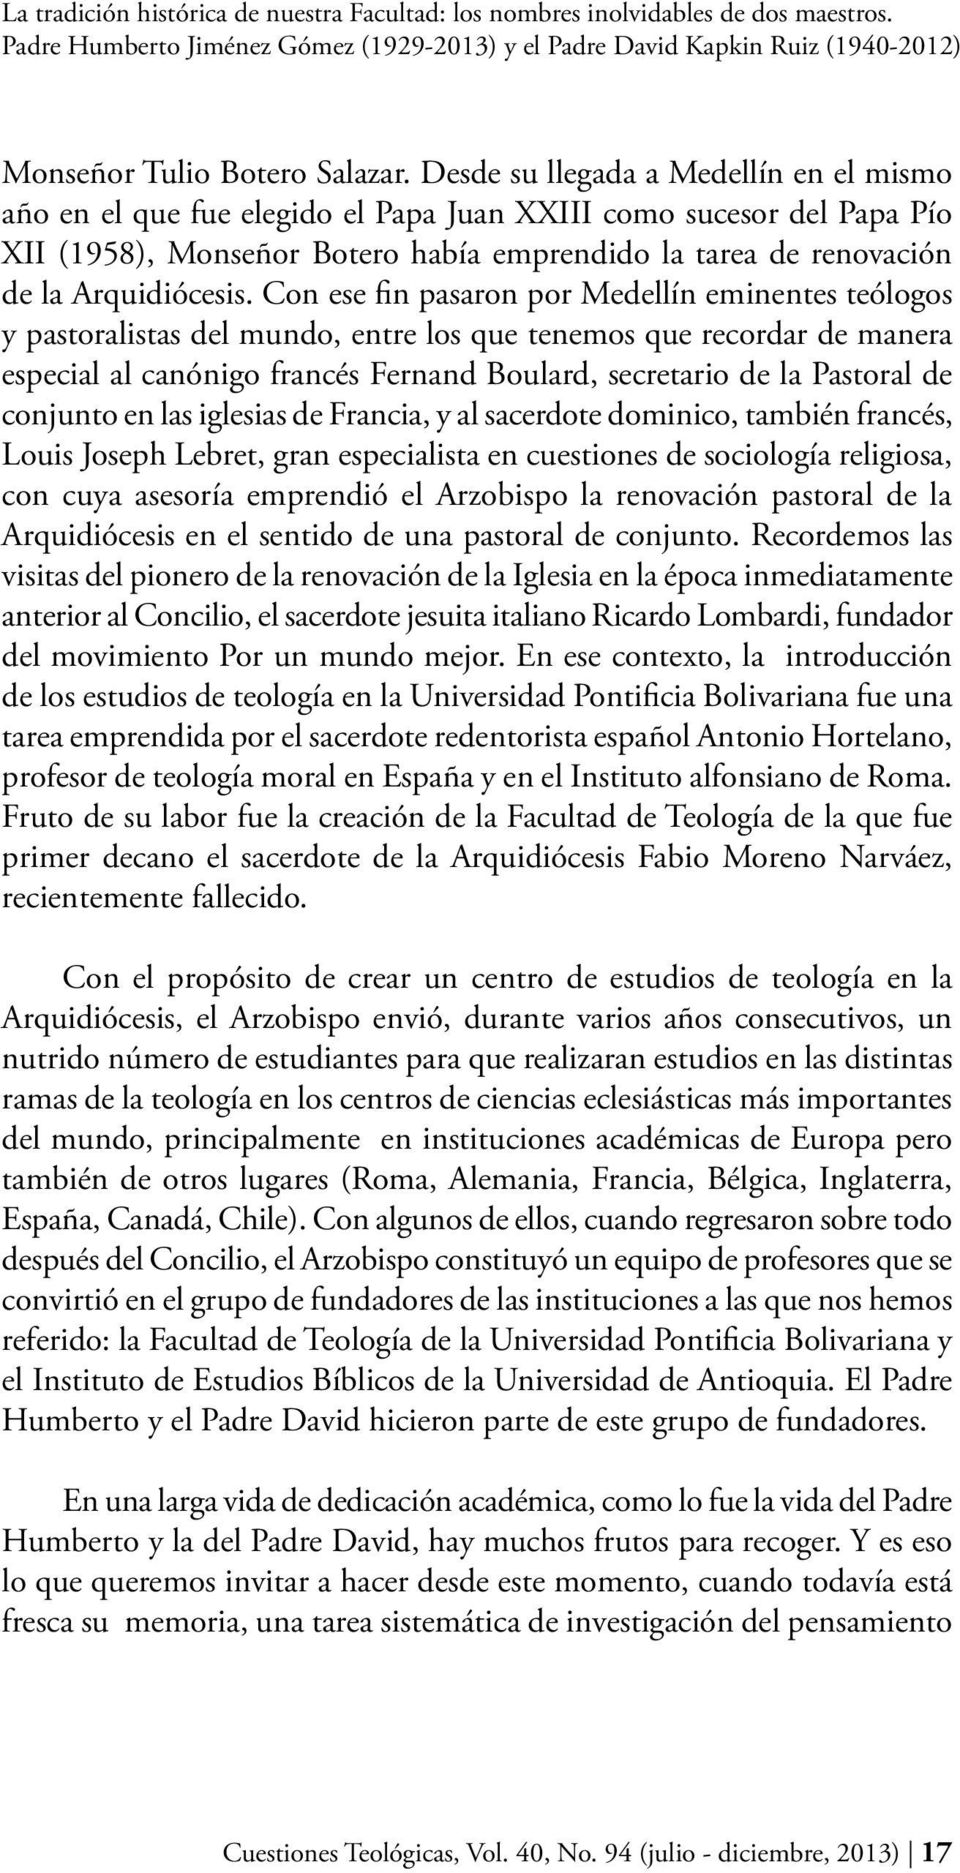 Con ese fin pasaron por Medellín eminentes teólogos y pastoralistas del mundo, entre los que tenemos que recordar de manera especial al canónigo francés Fernand Boulard, secretario de la Pastoral de